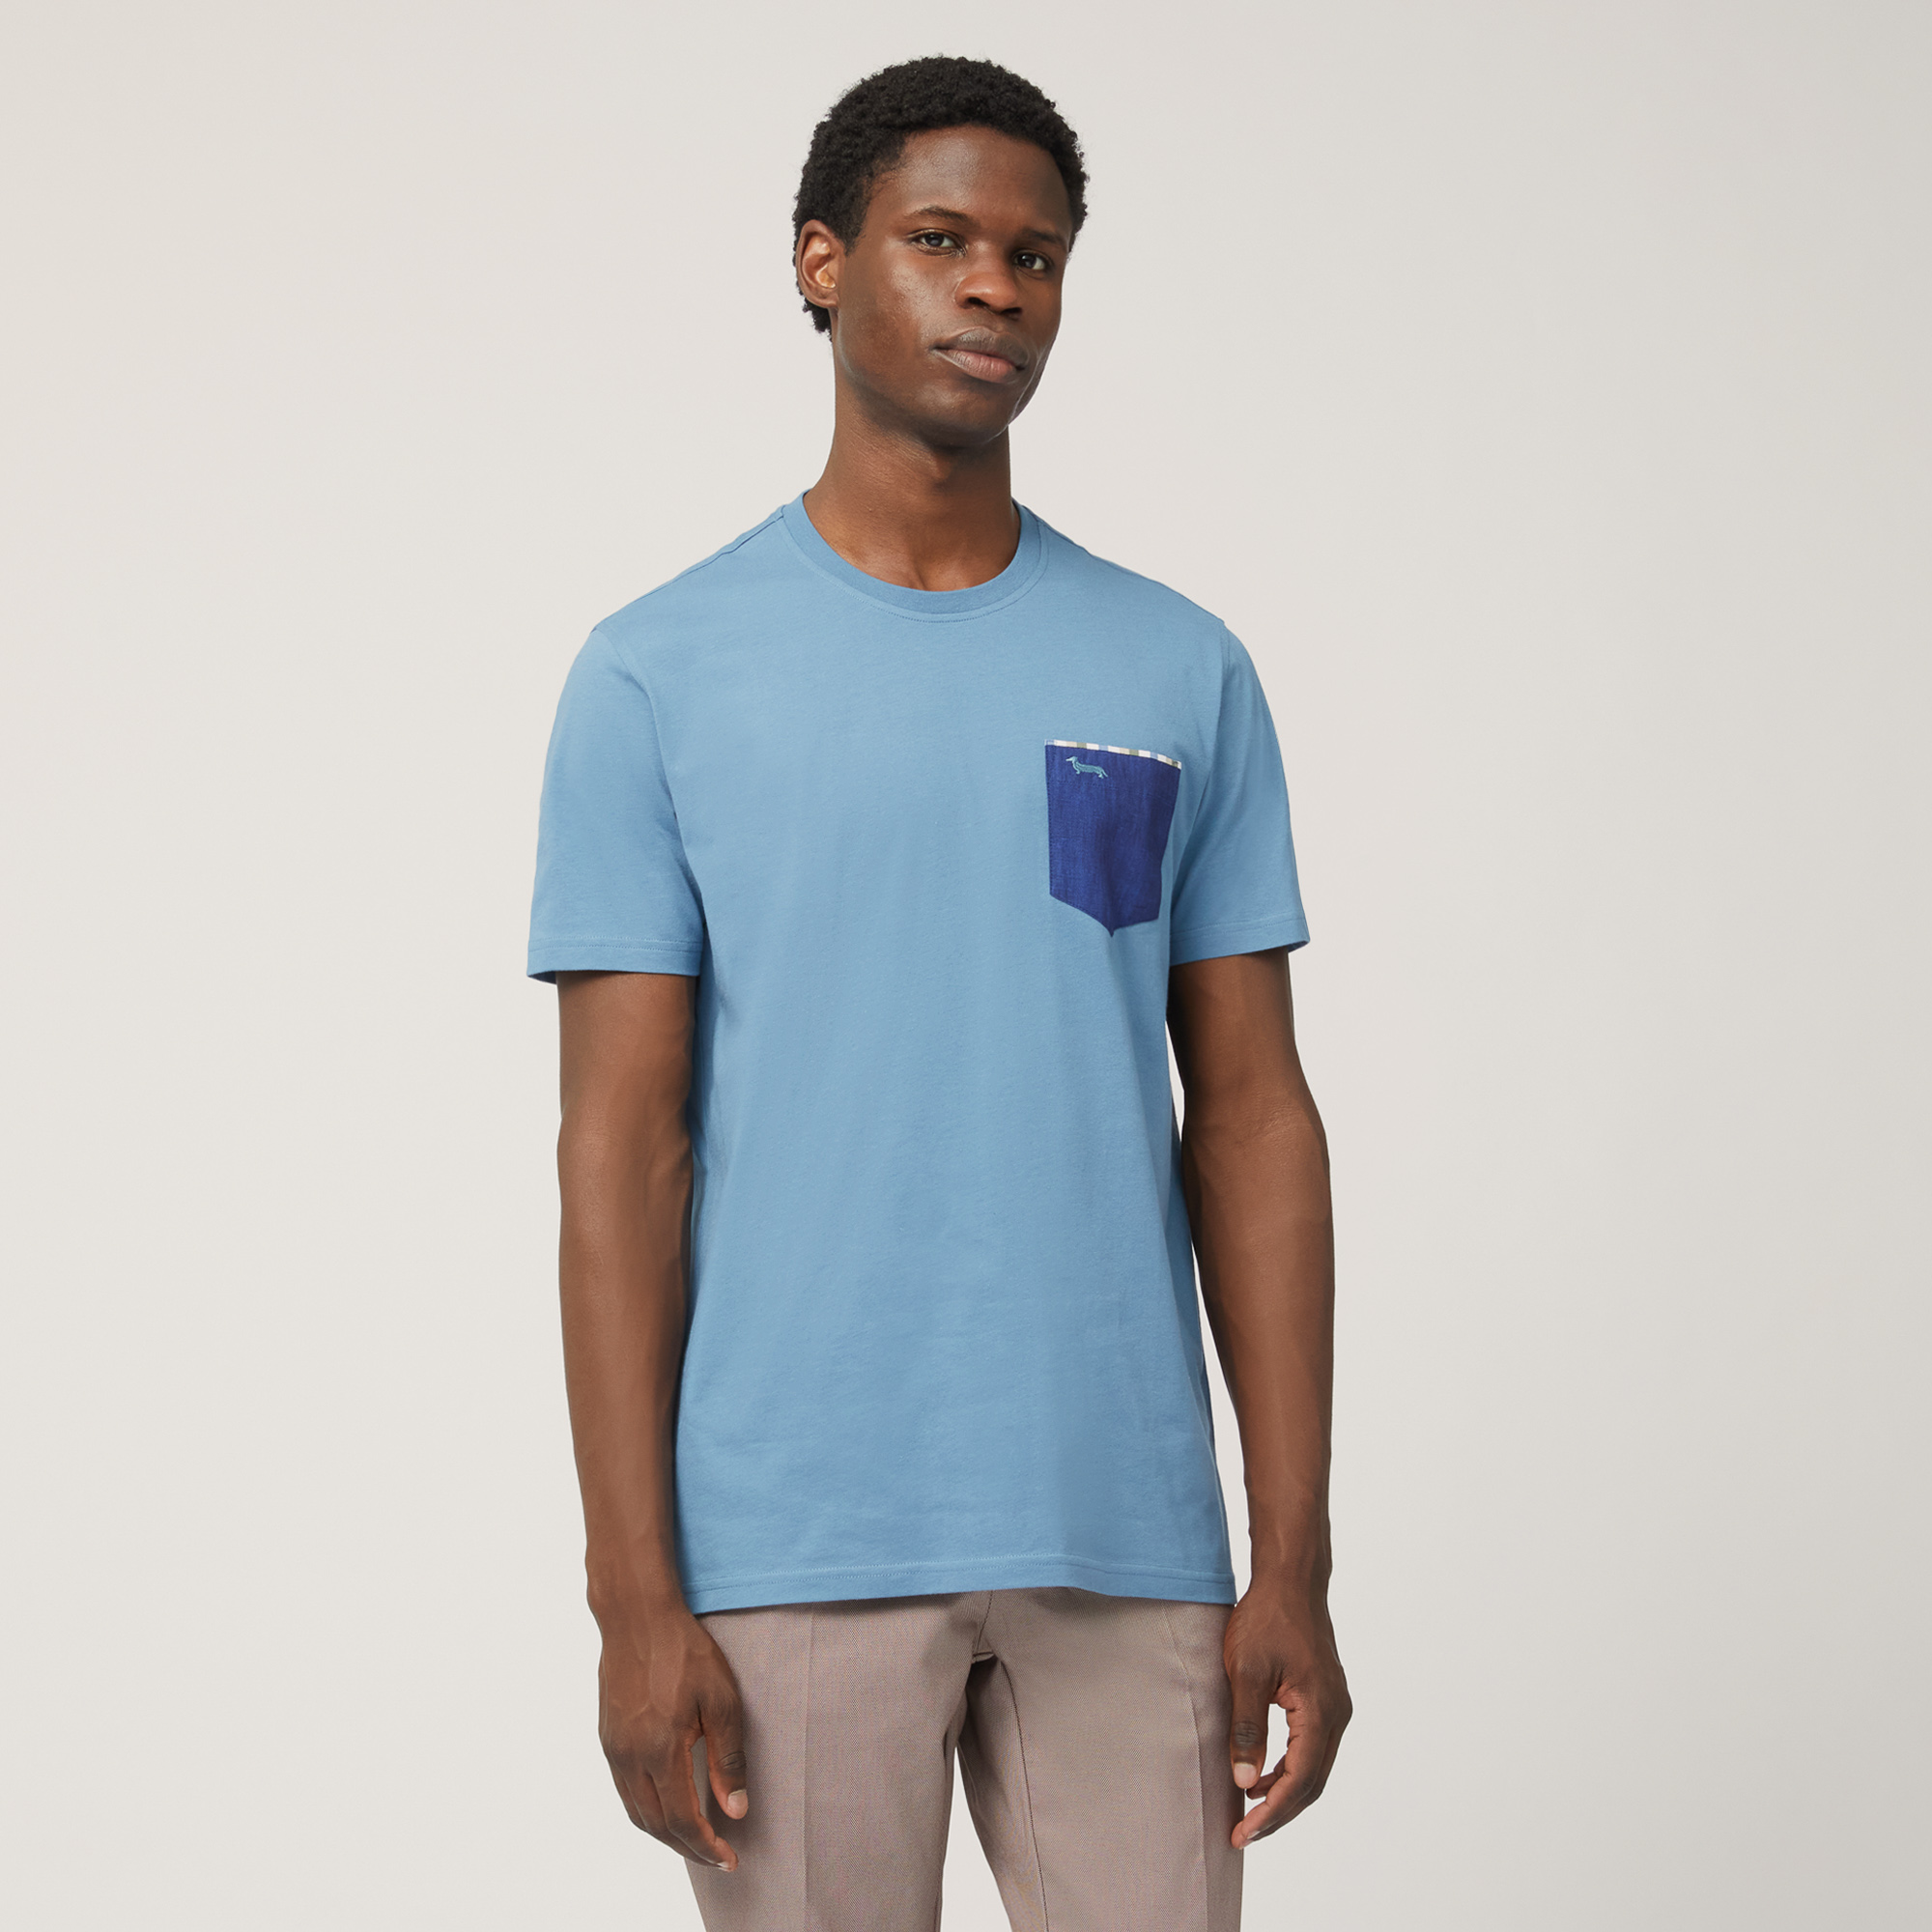 T-Shirt mit Brusttasche, Blau, large